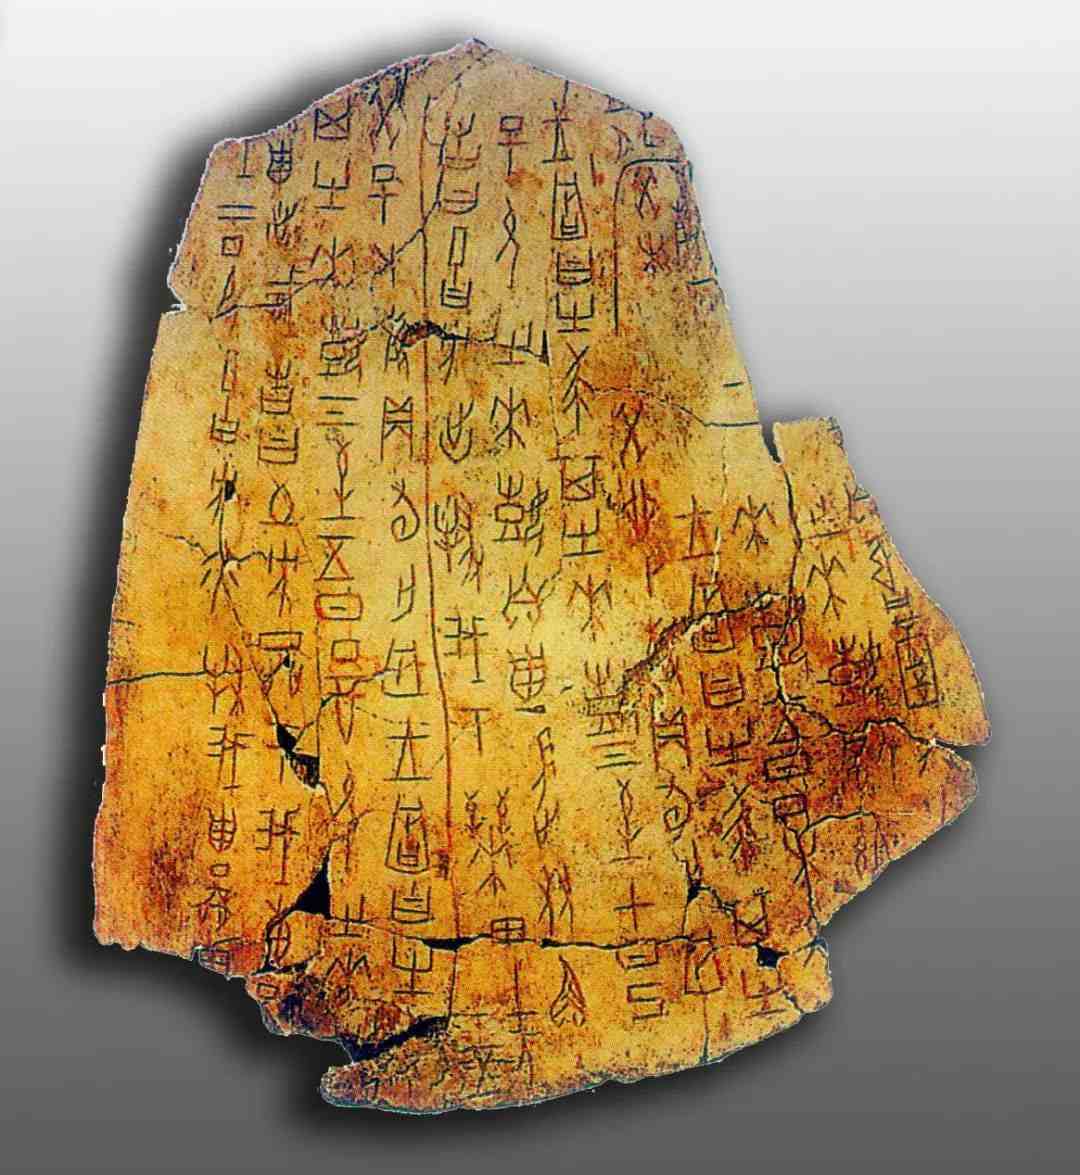 甲骨文是目前所发现的最早的汉字形态